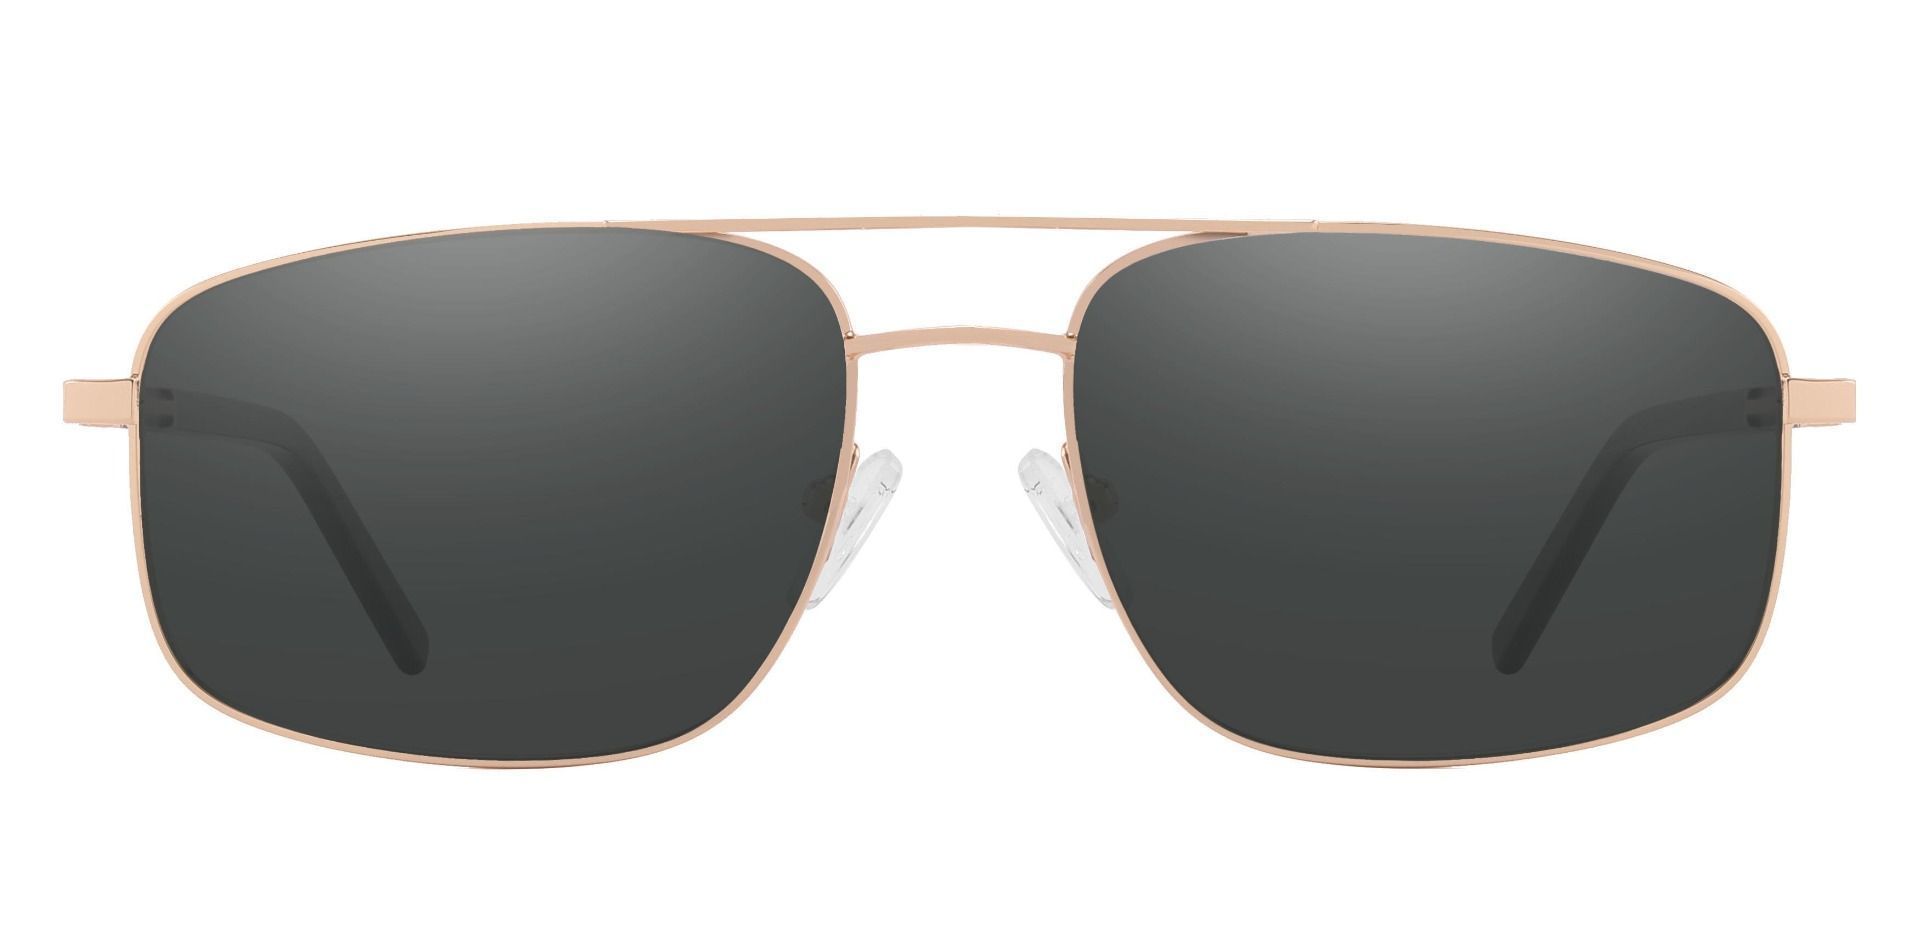 Davenport Aviator Progressive Sunglasses - Gold Frame With Gray Lenses